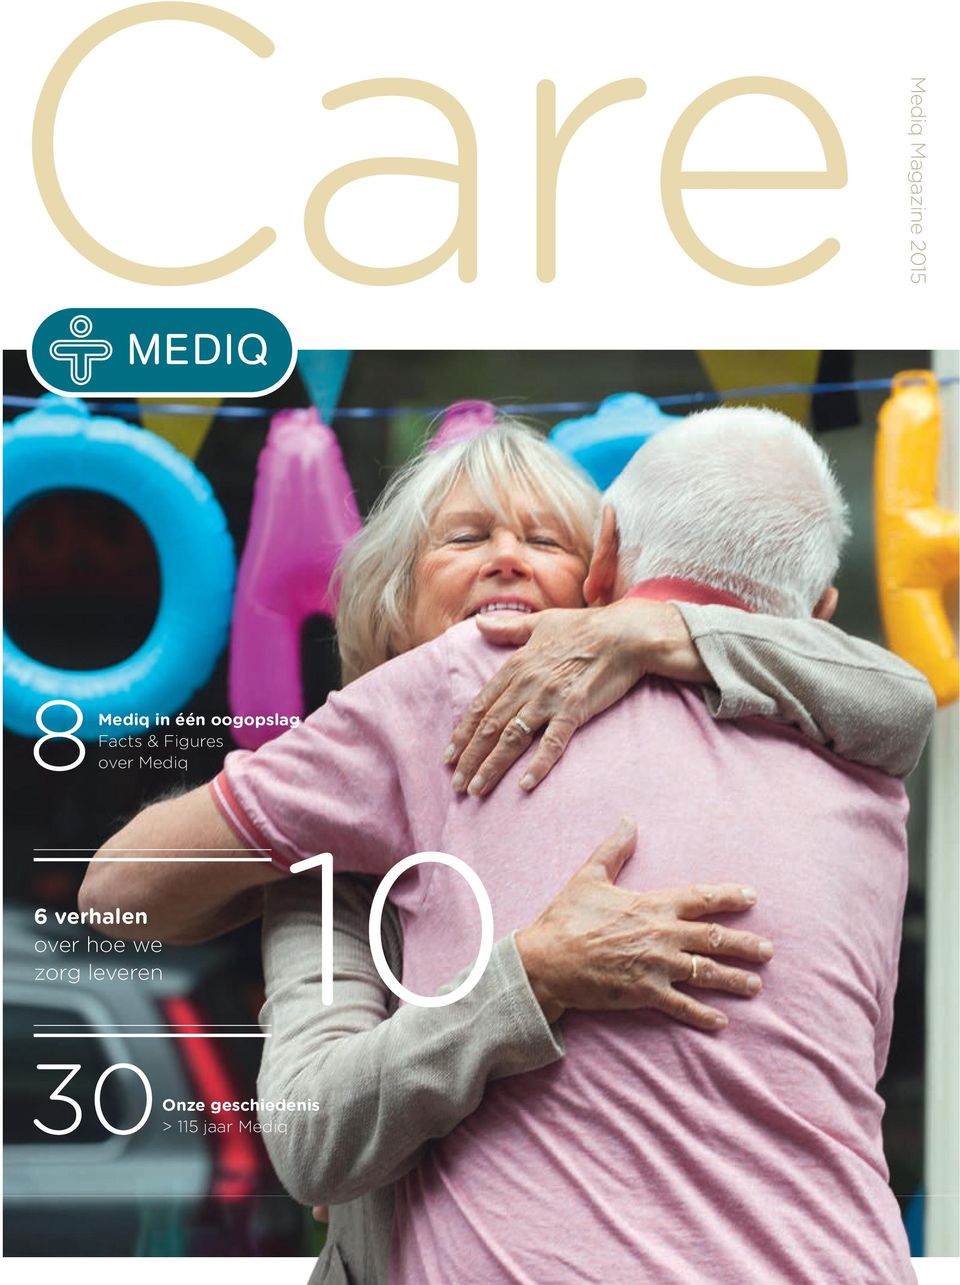 Mediq 6 verhalen over hoe we zorg